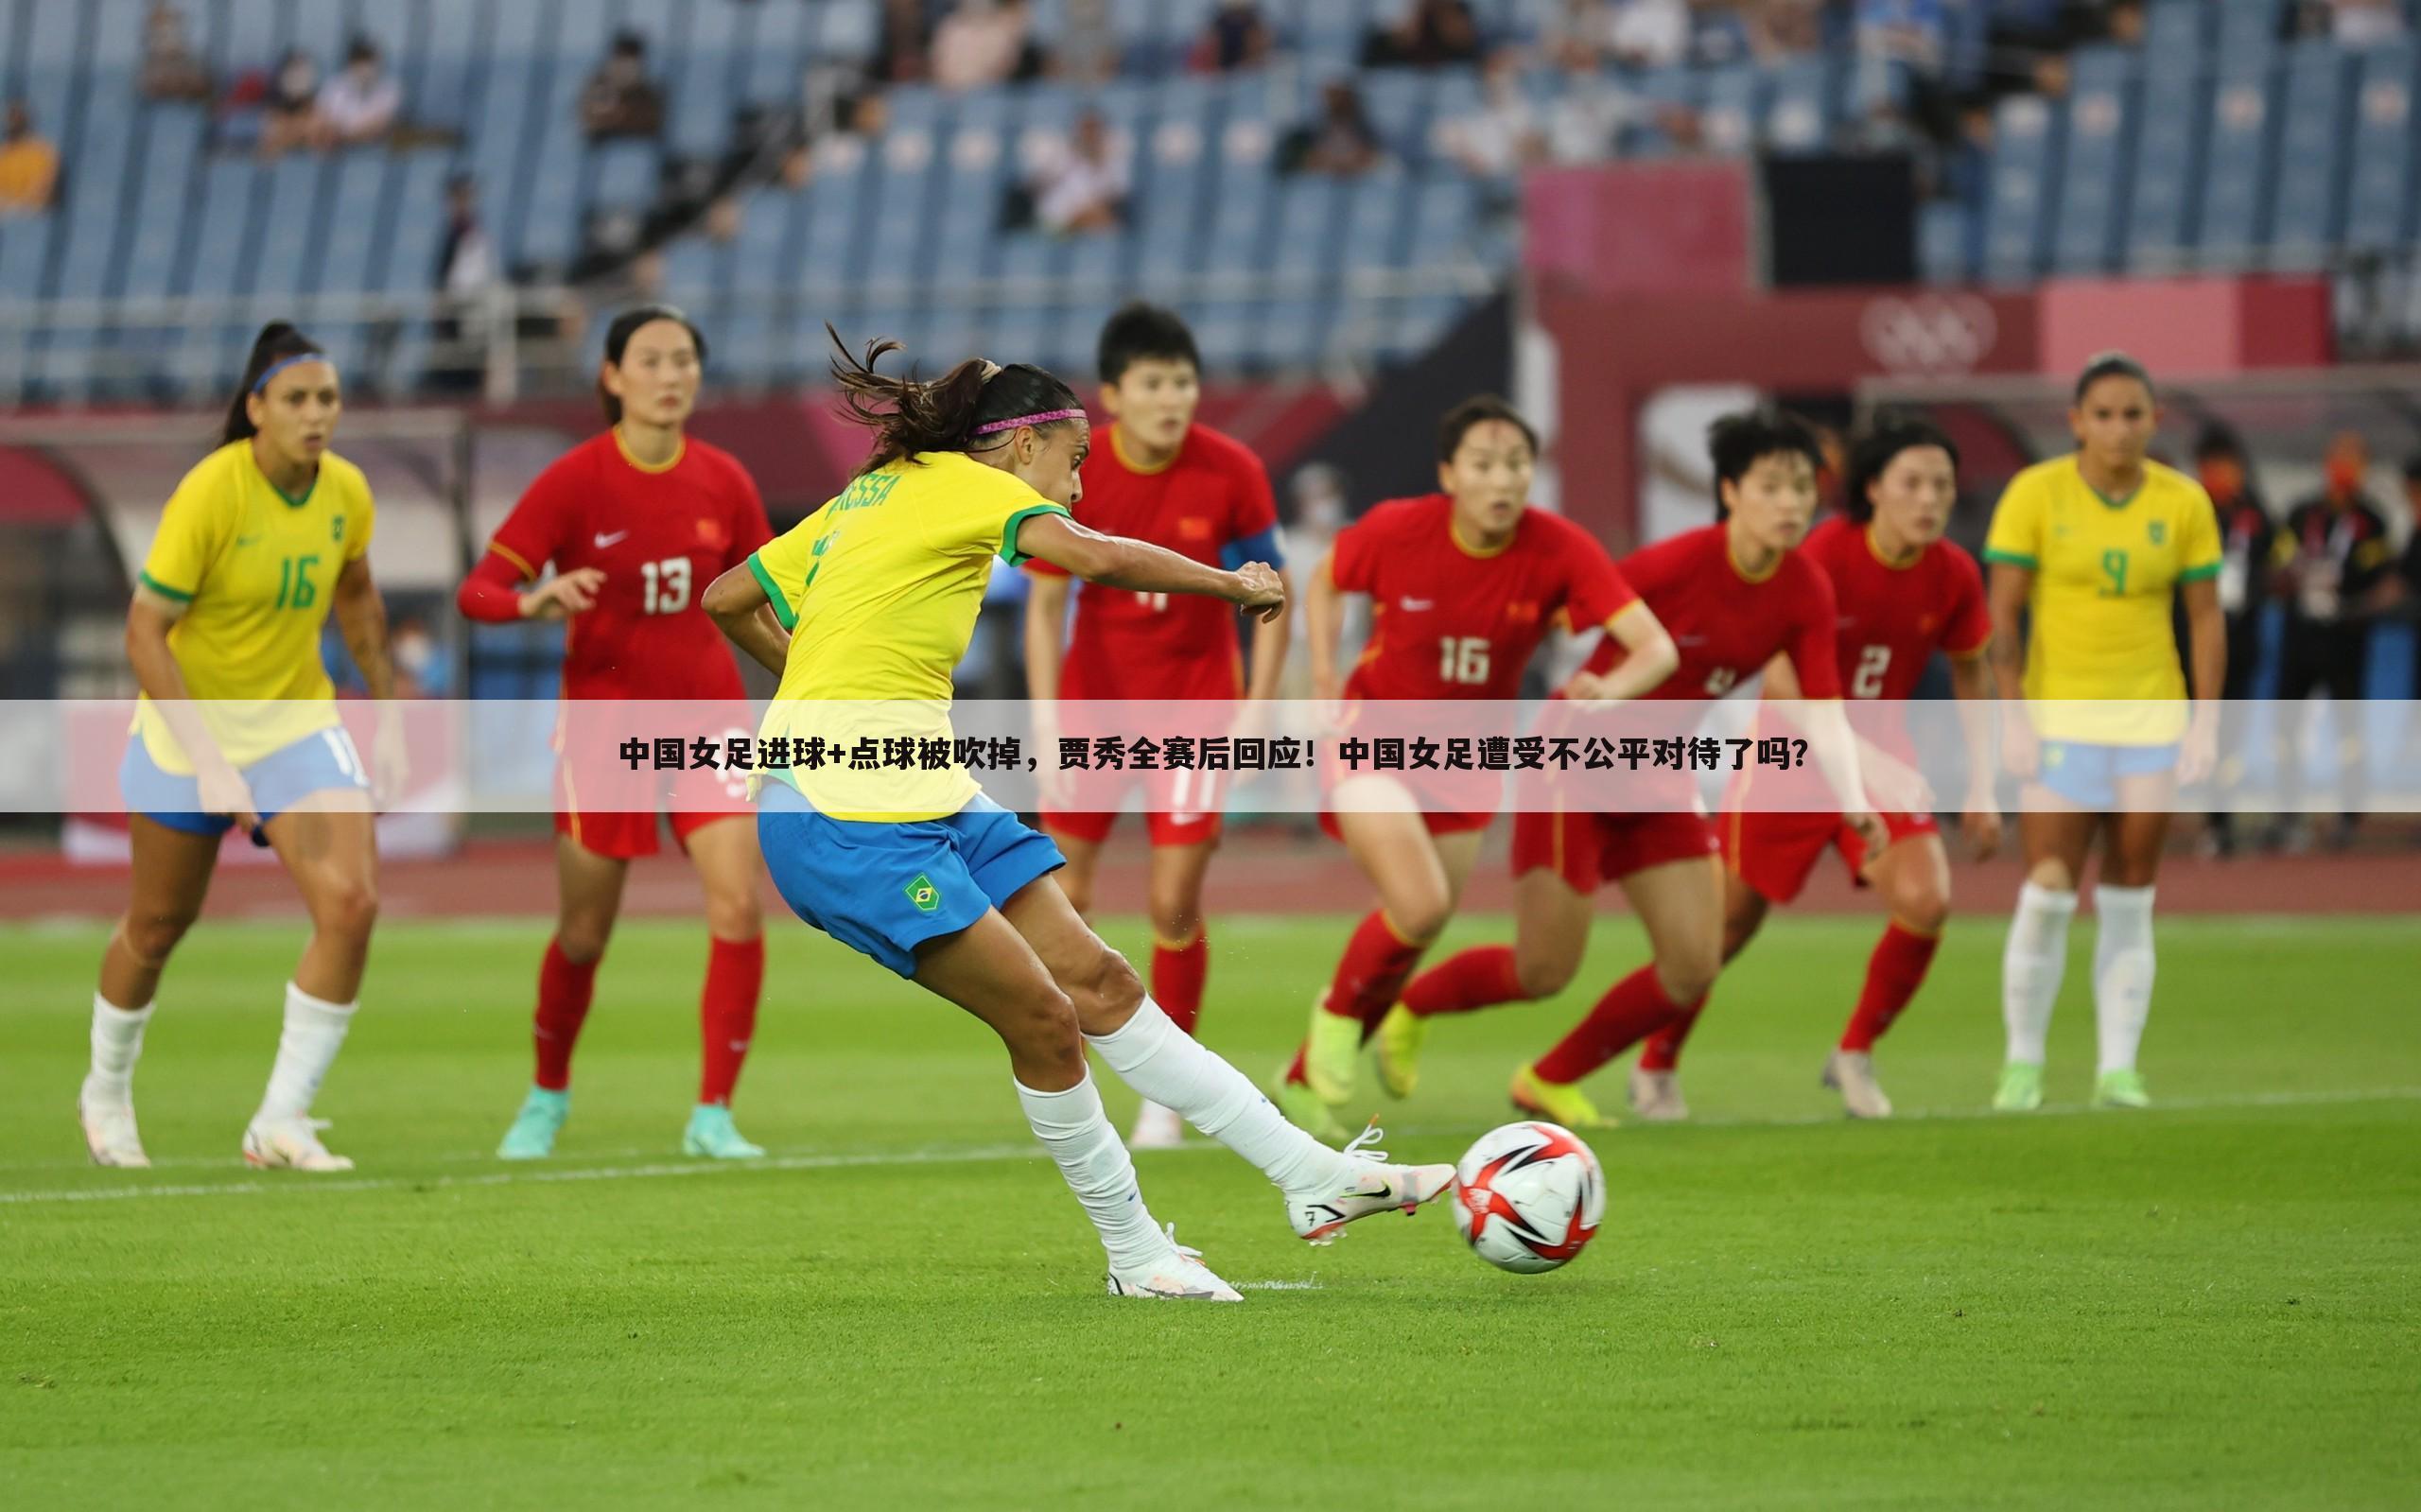 中国女足进球+点球被吹掉，贾秀全赛后回应！中国女足遭受不公平对待了吗？